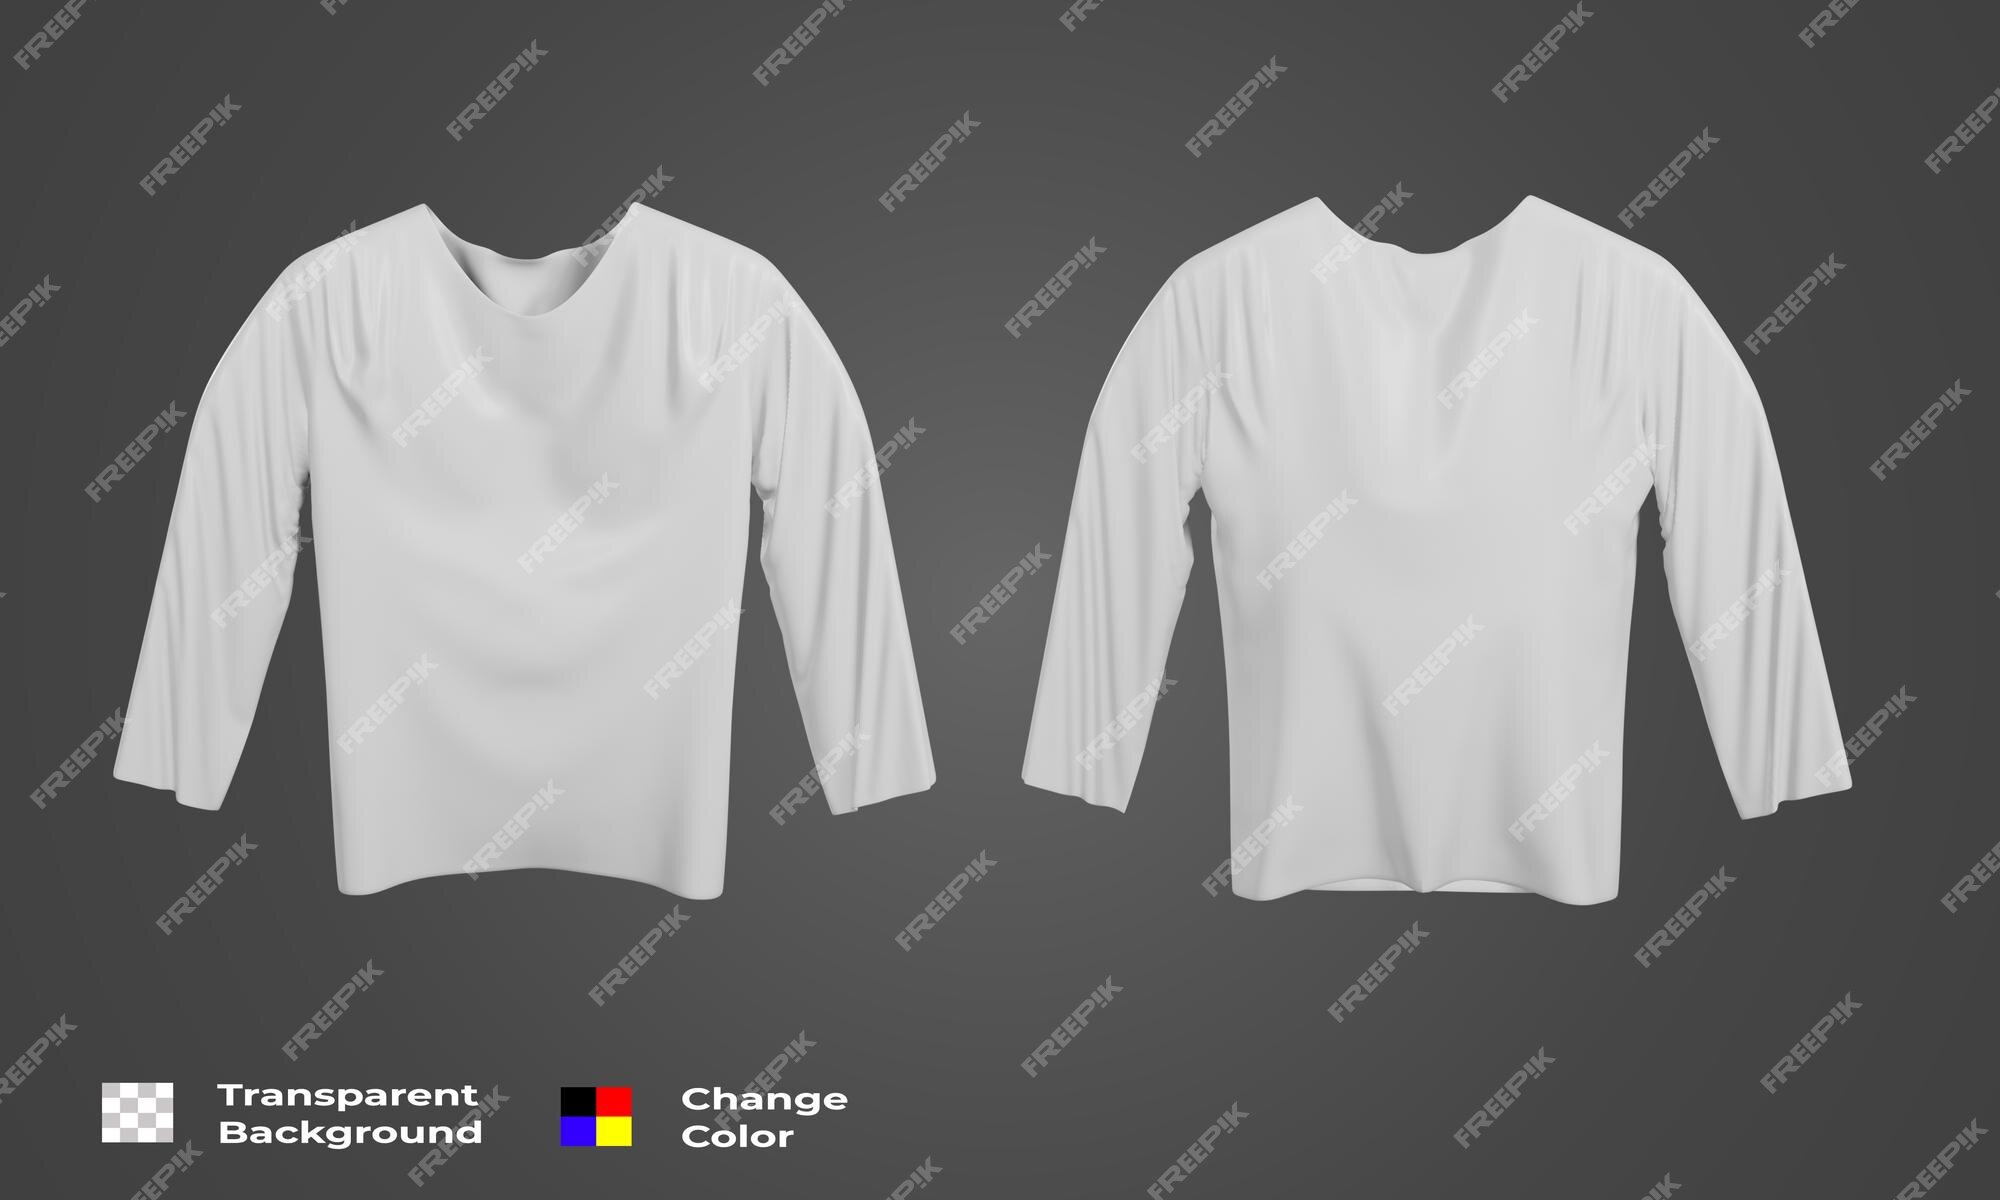 Bạn đang muốn tìm kiếm một cách thể hiện sản phẩm độc đáo? Hãy thử sử dụng mẫu áo thun mới nhất với Shirt mockup! Xem hình ảnh liên quan để khám phá thêm về cách tạo ra một bản thiết kế hoàn hảo.